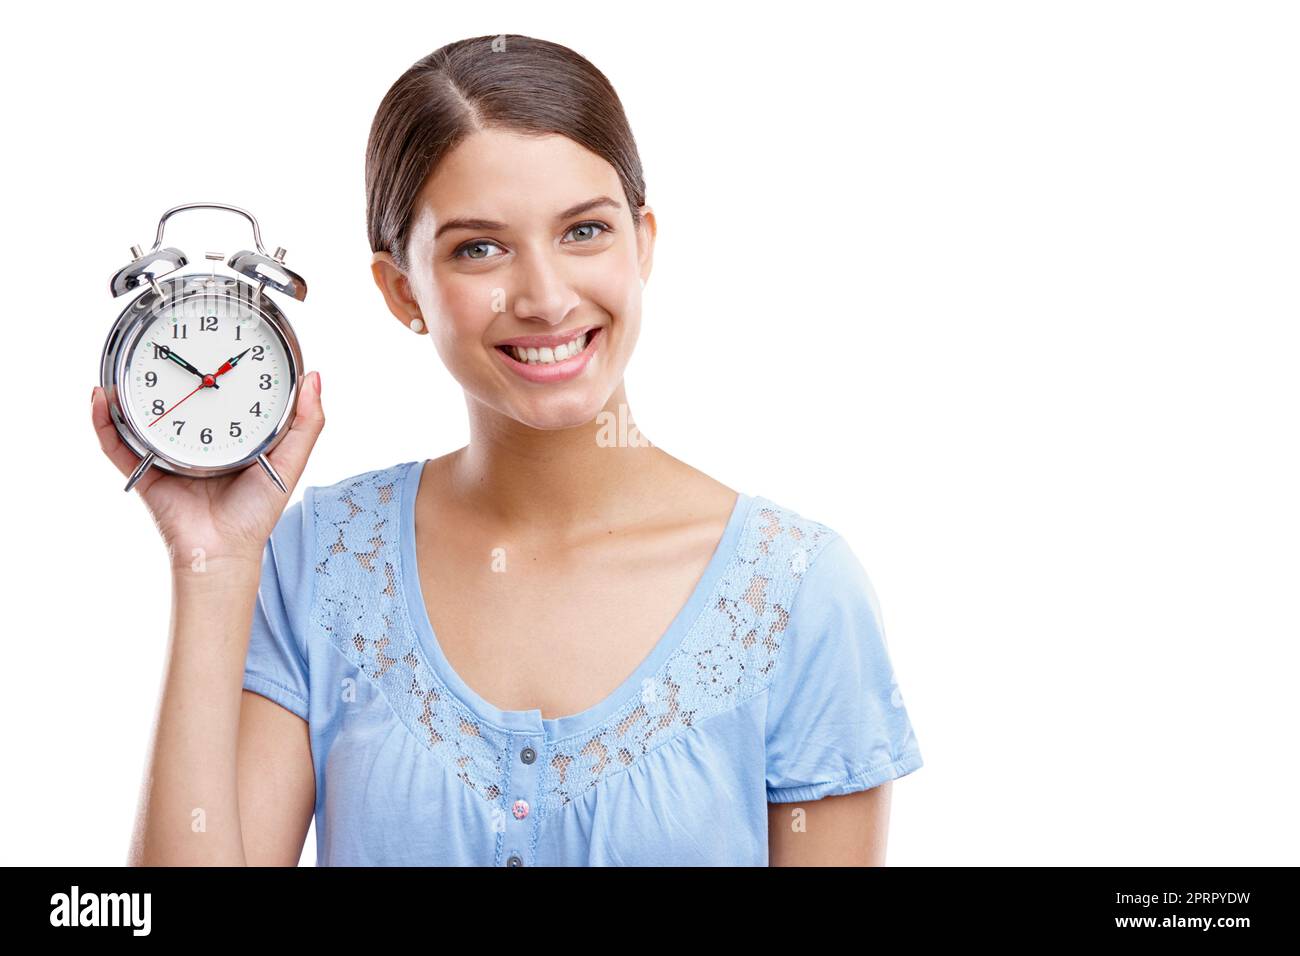 Sfrutta al massimo ogni minuto. Ritratto di una giovane donna attraente che tiene un orologio su uno sfondo bianco. Foto Stock